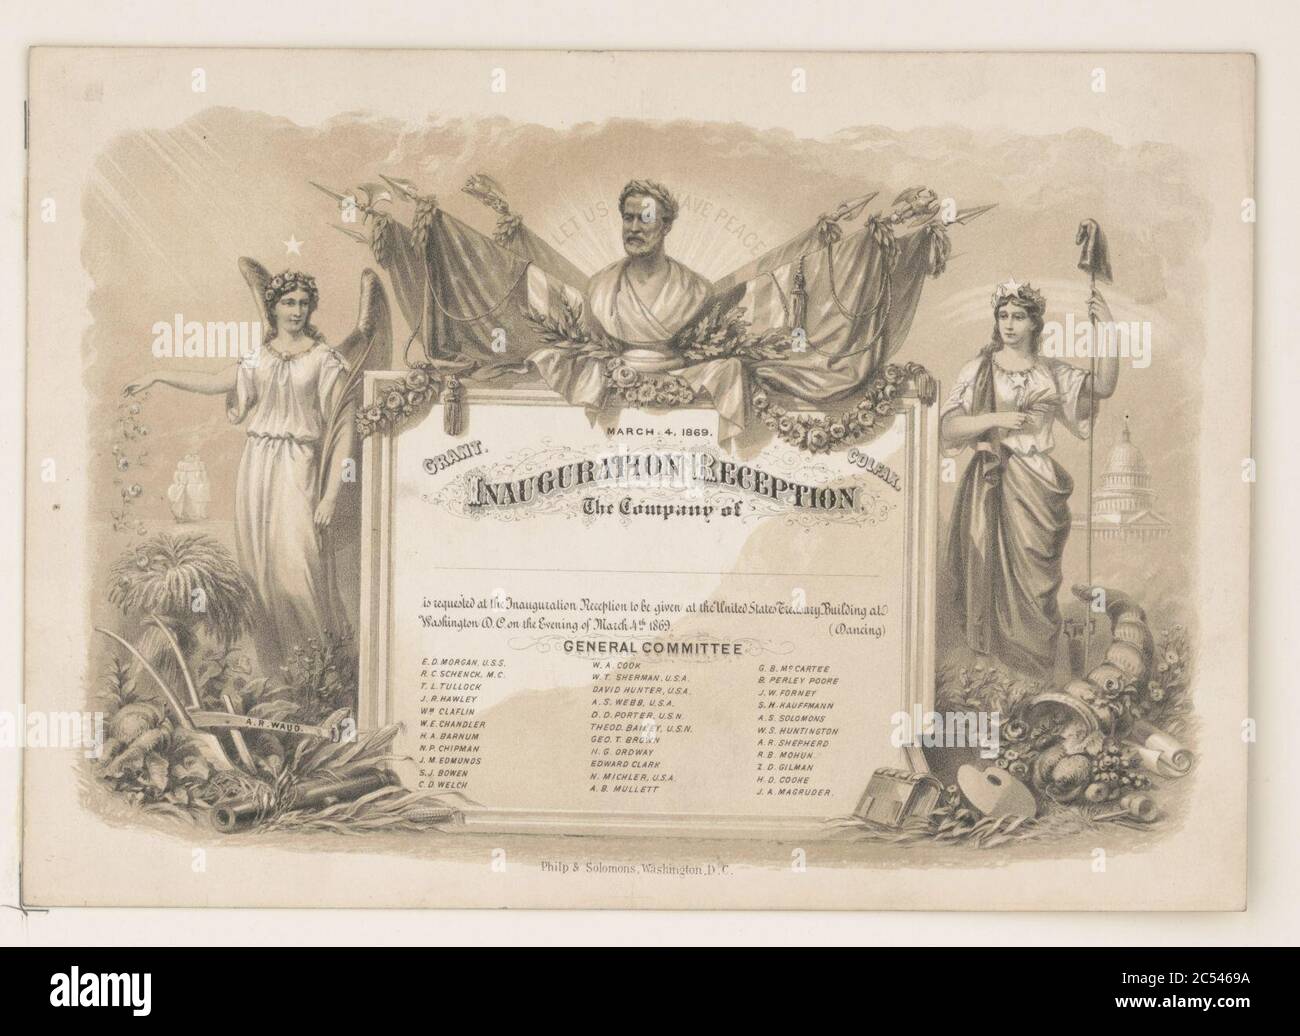 Inauguration reception (invitation) March 4, 1869 Stock Photo